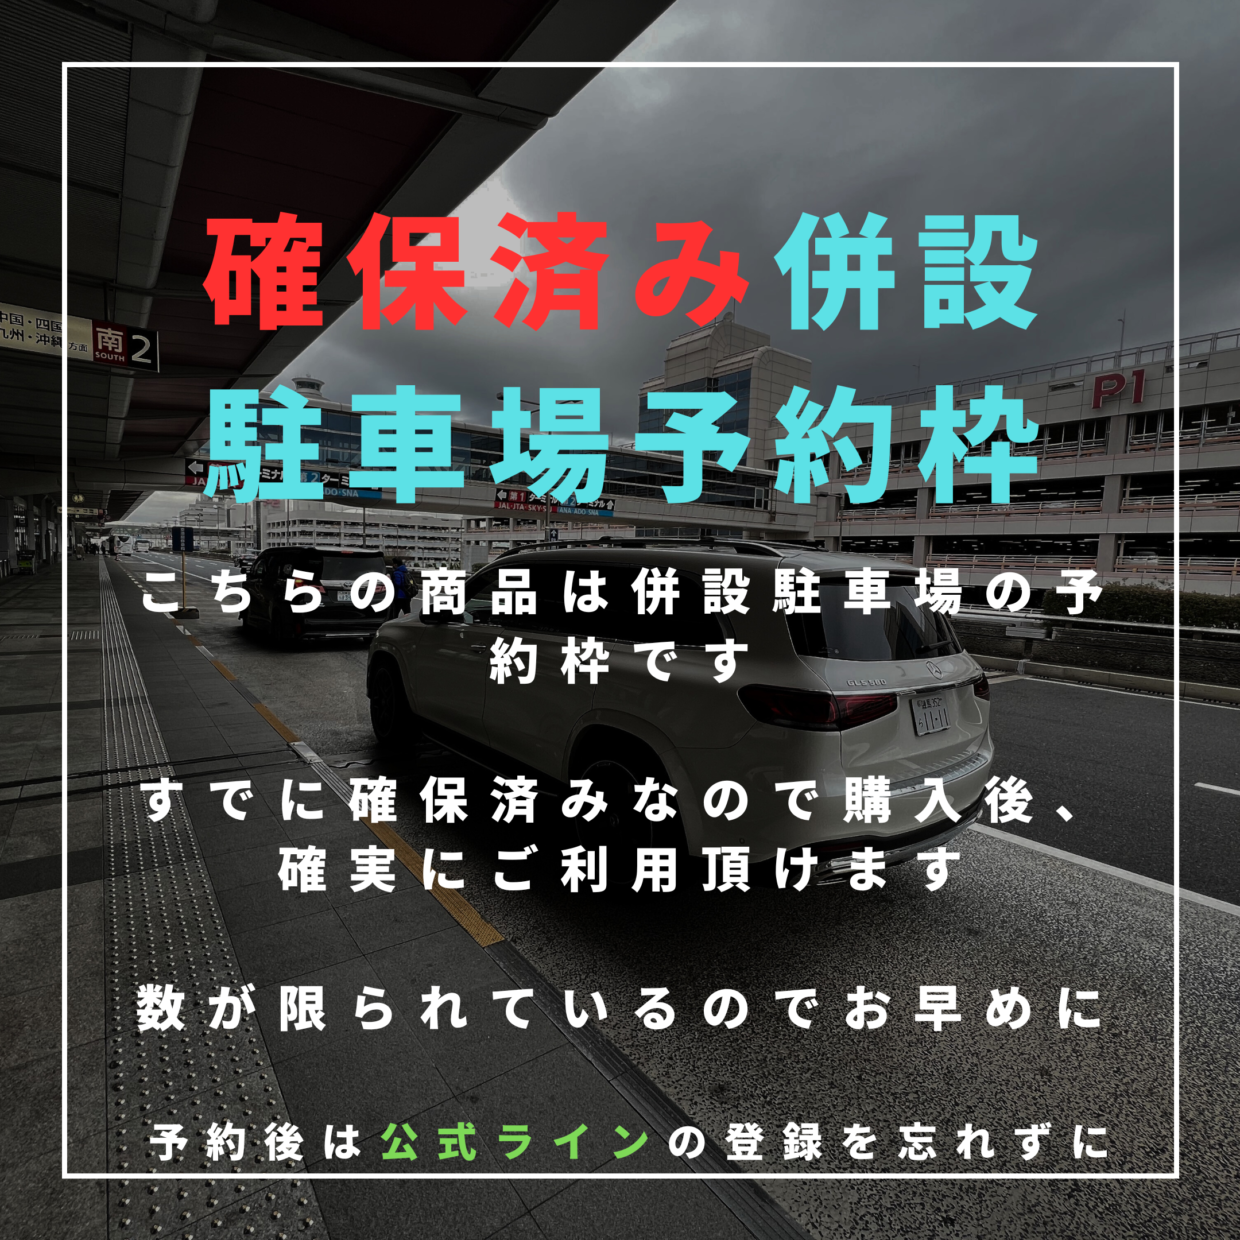 【ゴールデンウイーク】羽田空港併設駐車場の予約枠